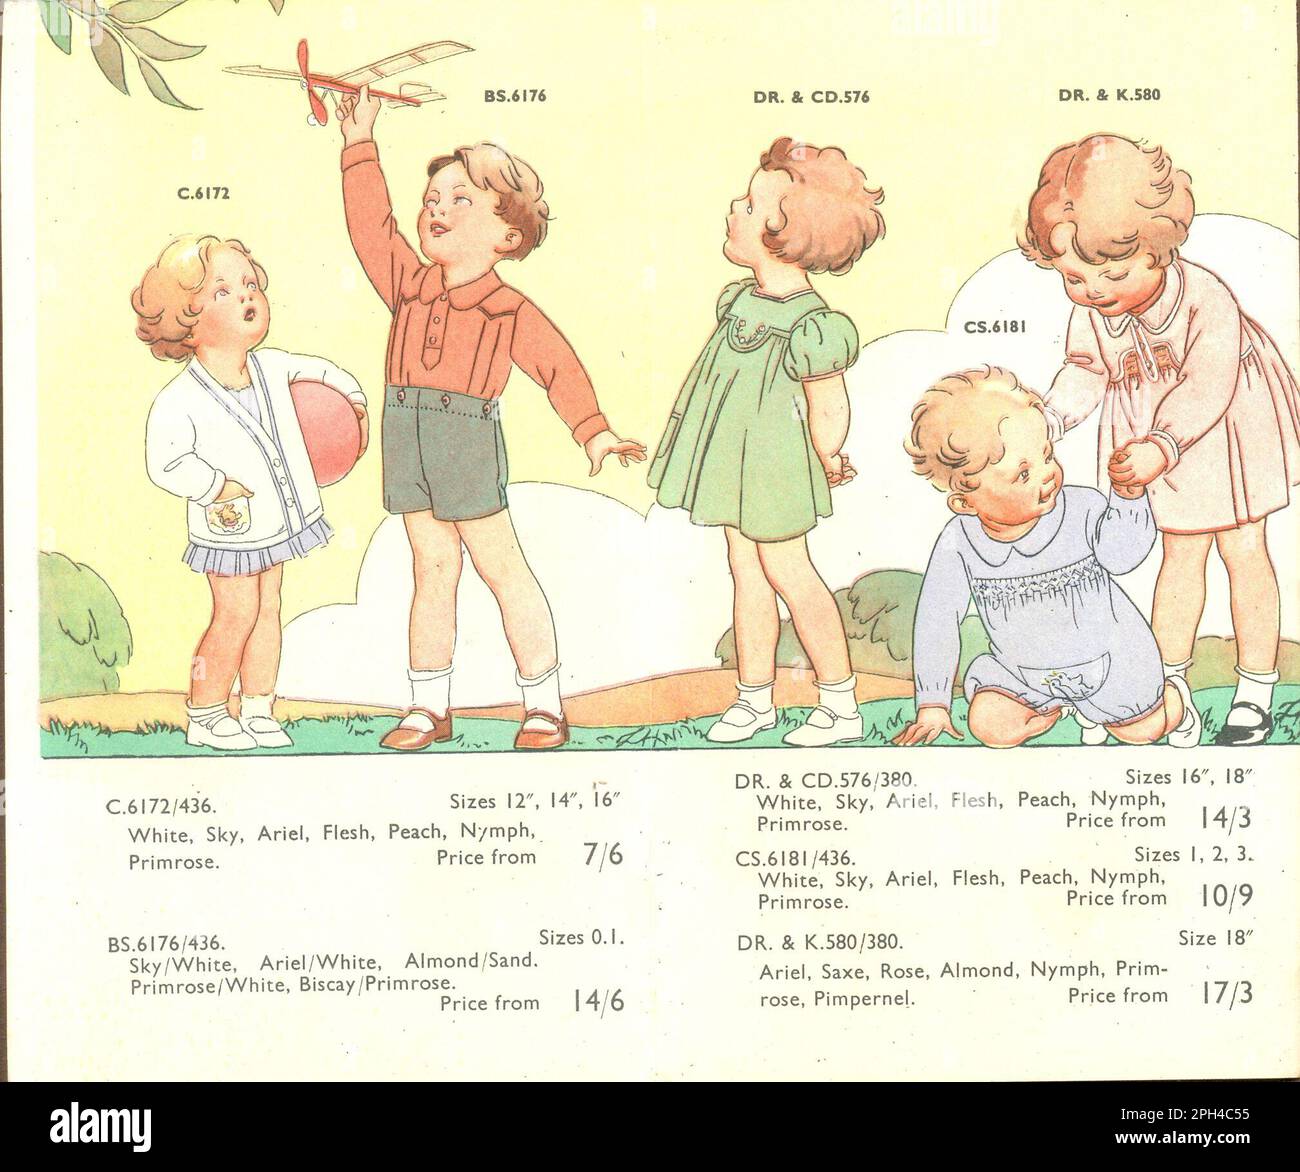 Seite aus der Werbebroschüre für Chilprufe Oberbekleidung und Strickmode 1928 Stockfoto